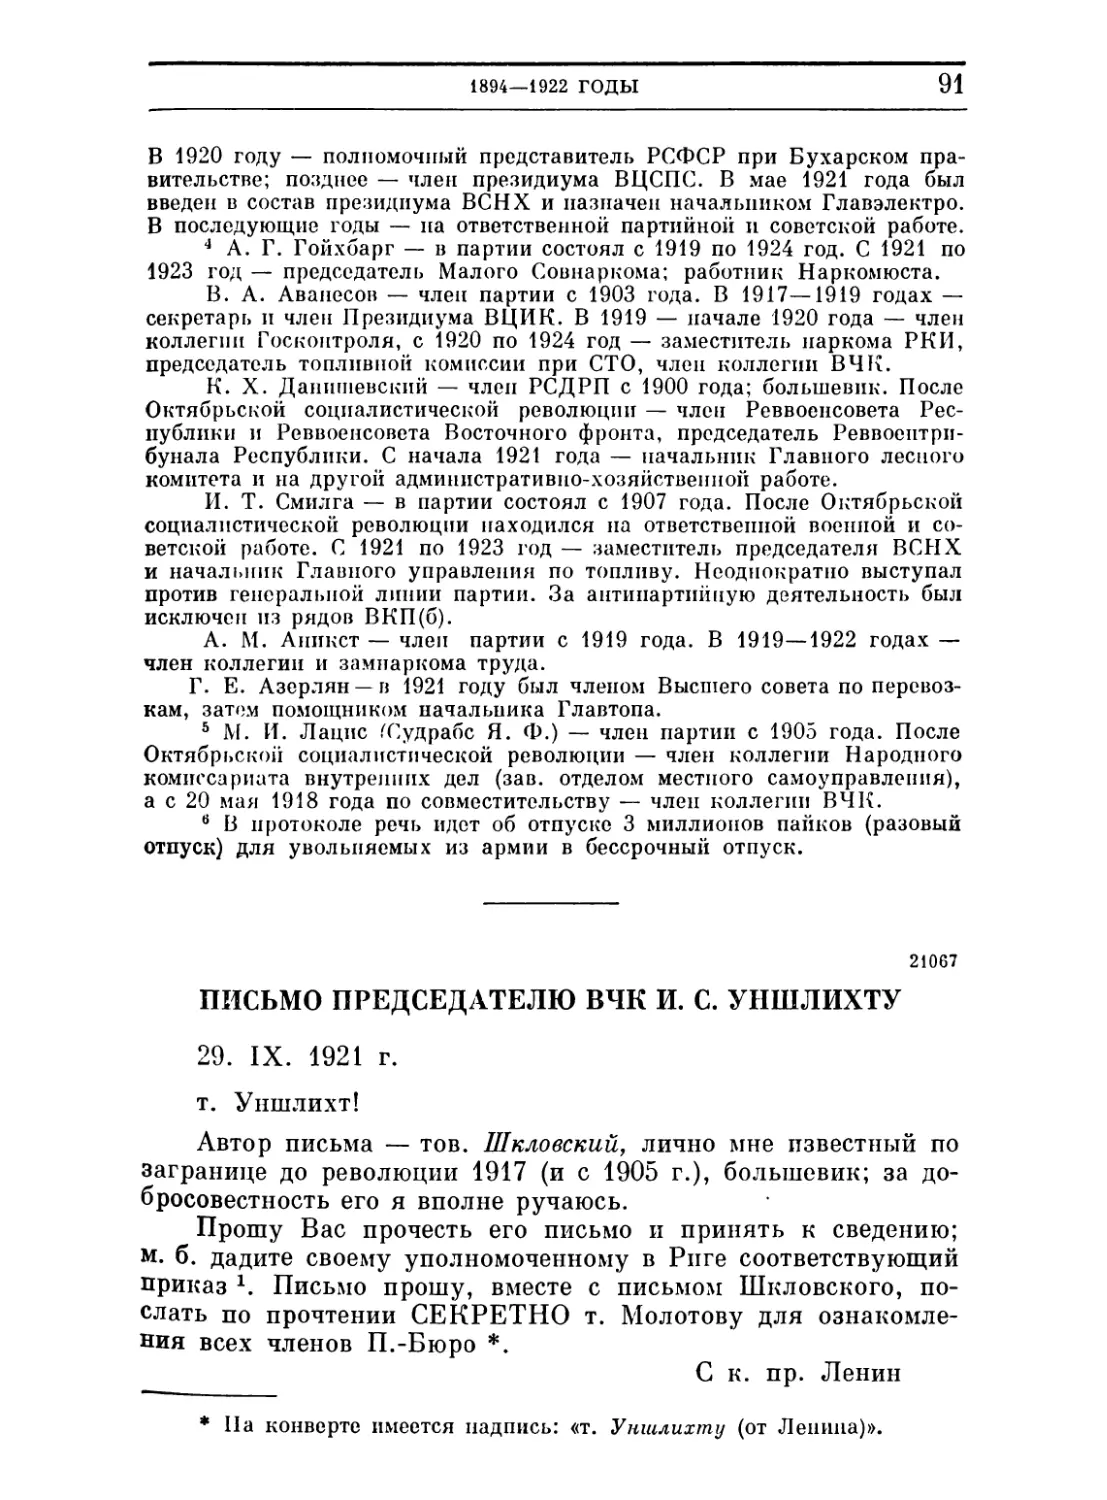 Письмо председателю ВЧК И. С. Уншлихту. 29 сентября 1921